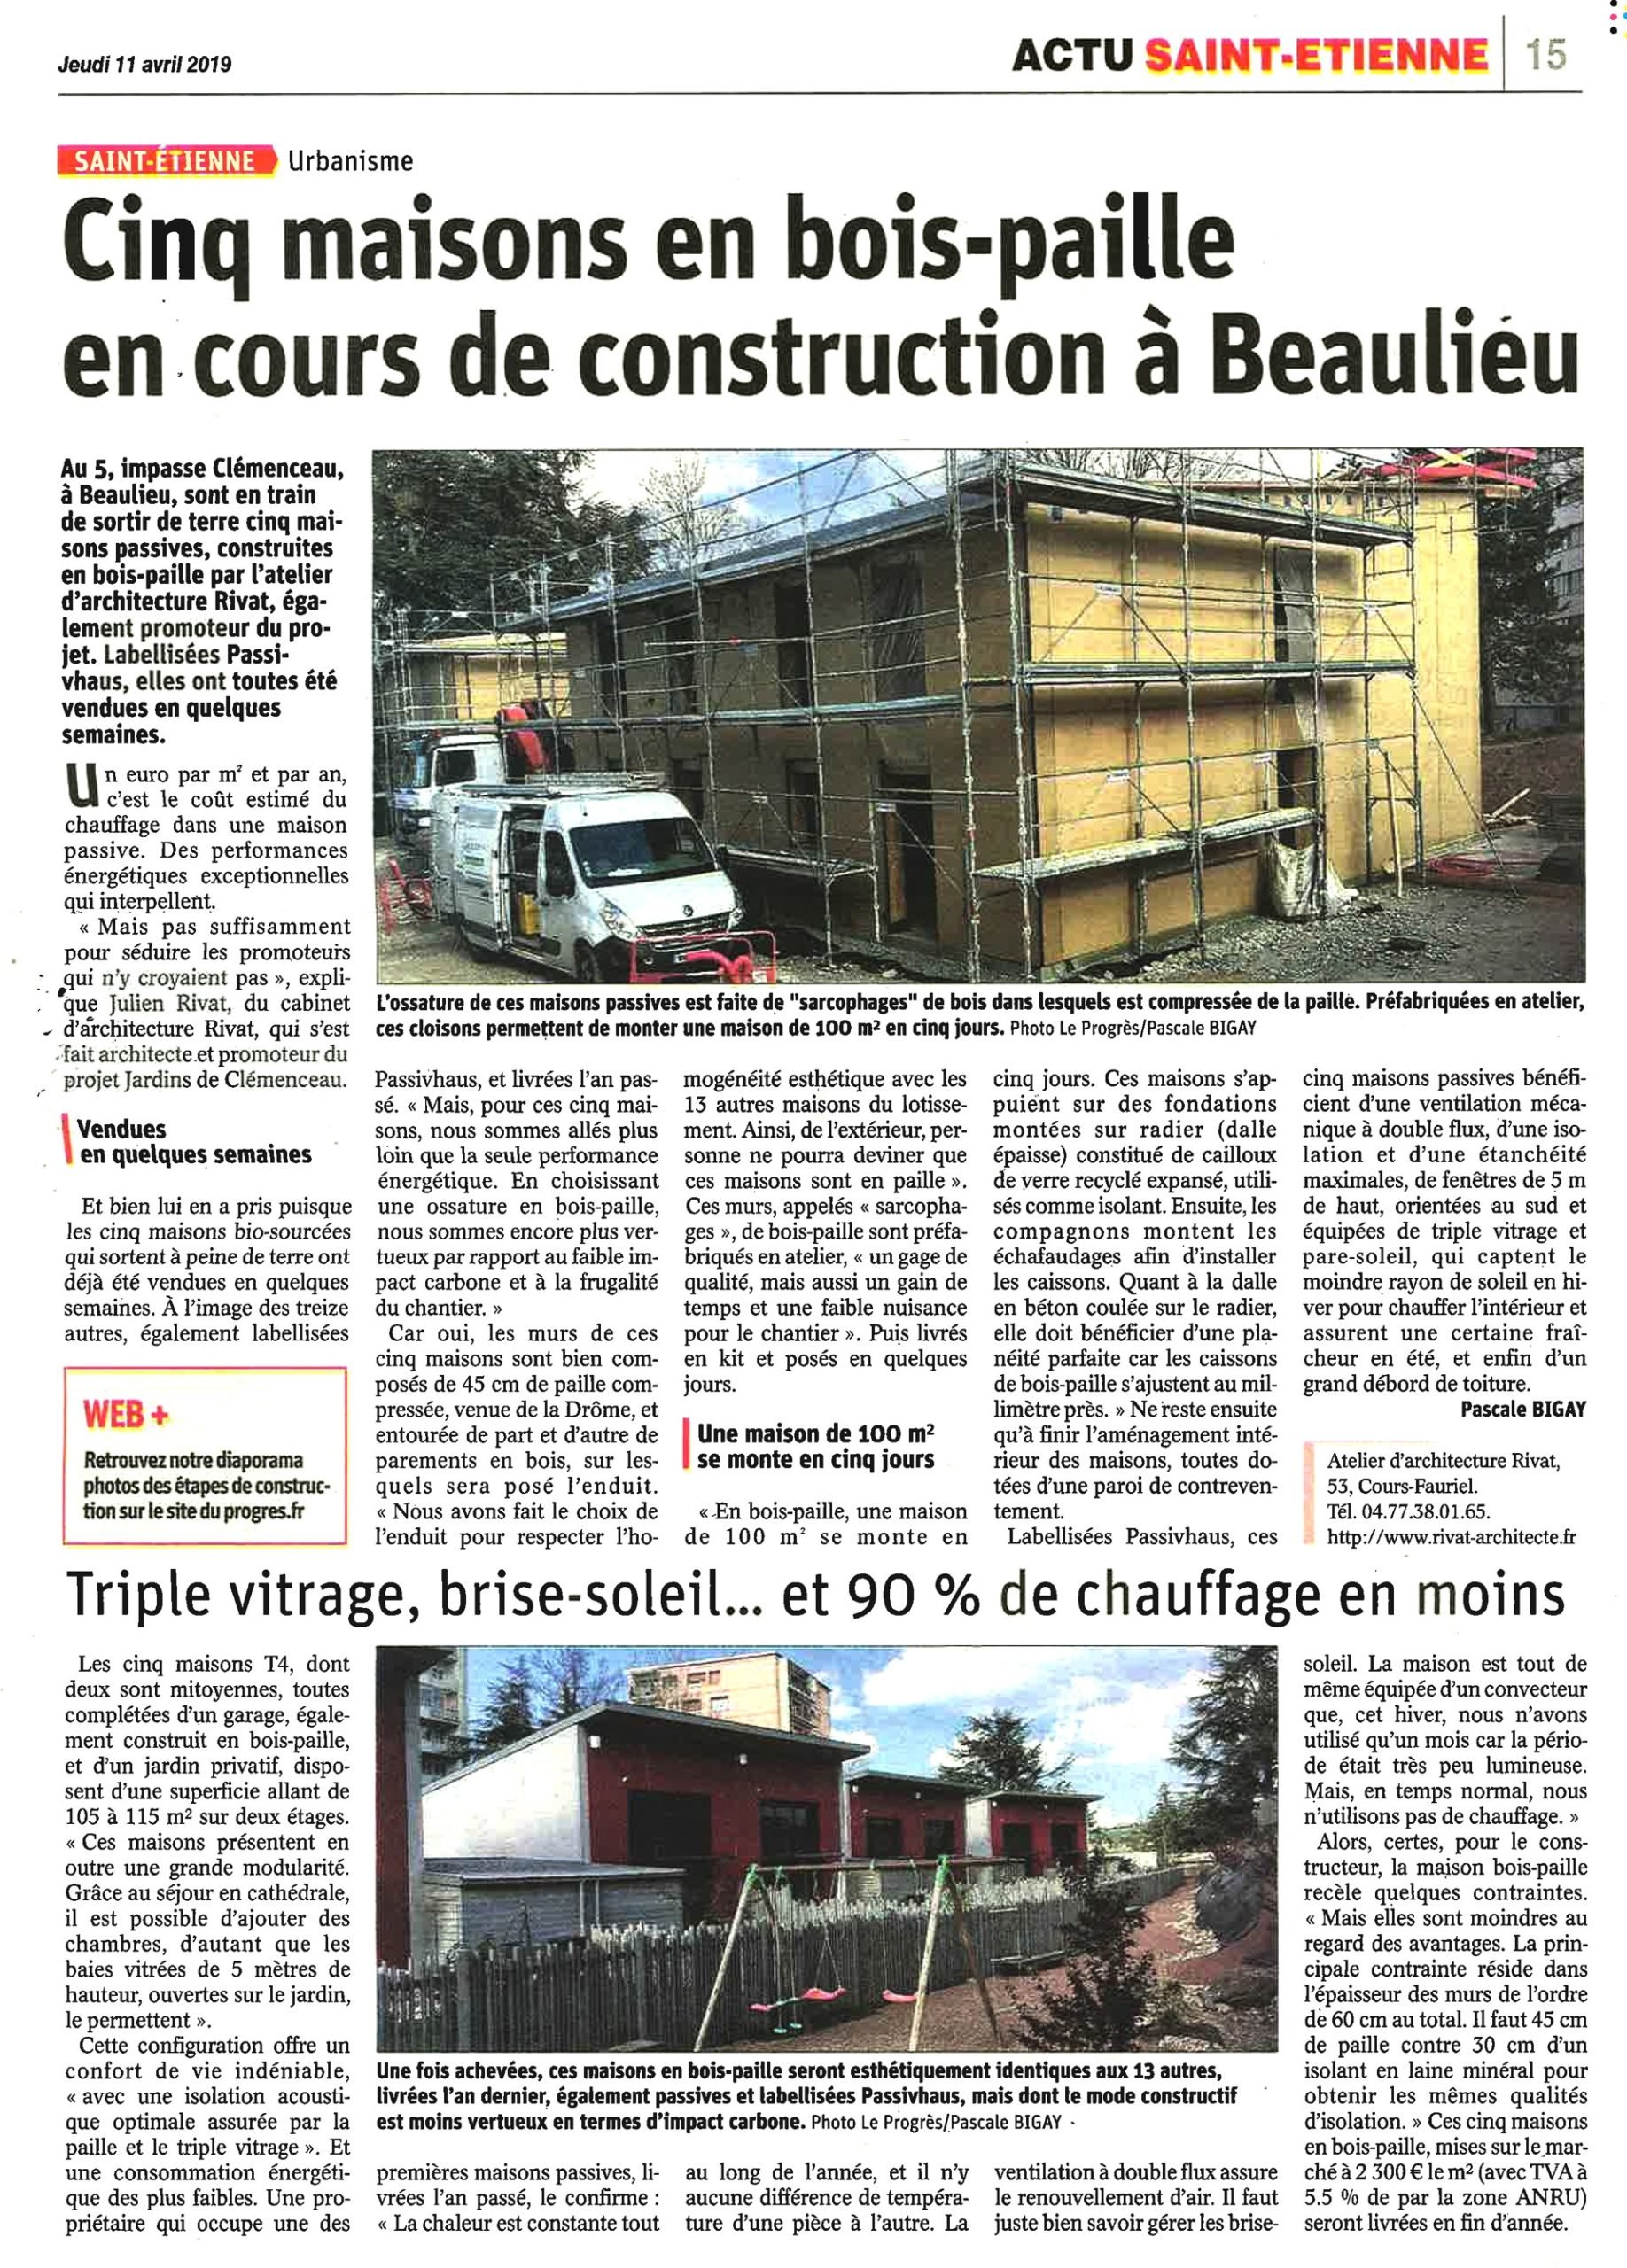 Nouvel Article dans le Progrès : Cinq maisons en bois-paille en cours de construction à Beaulieu